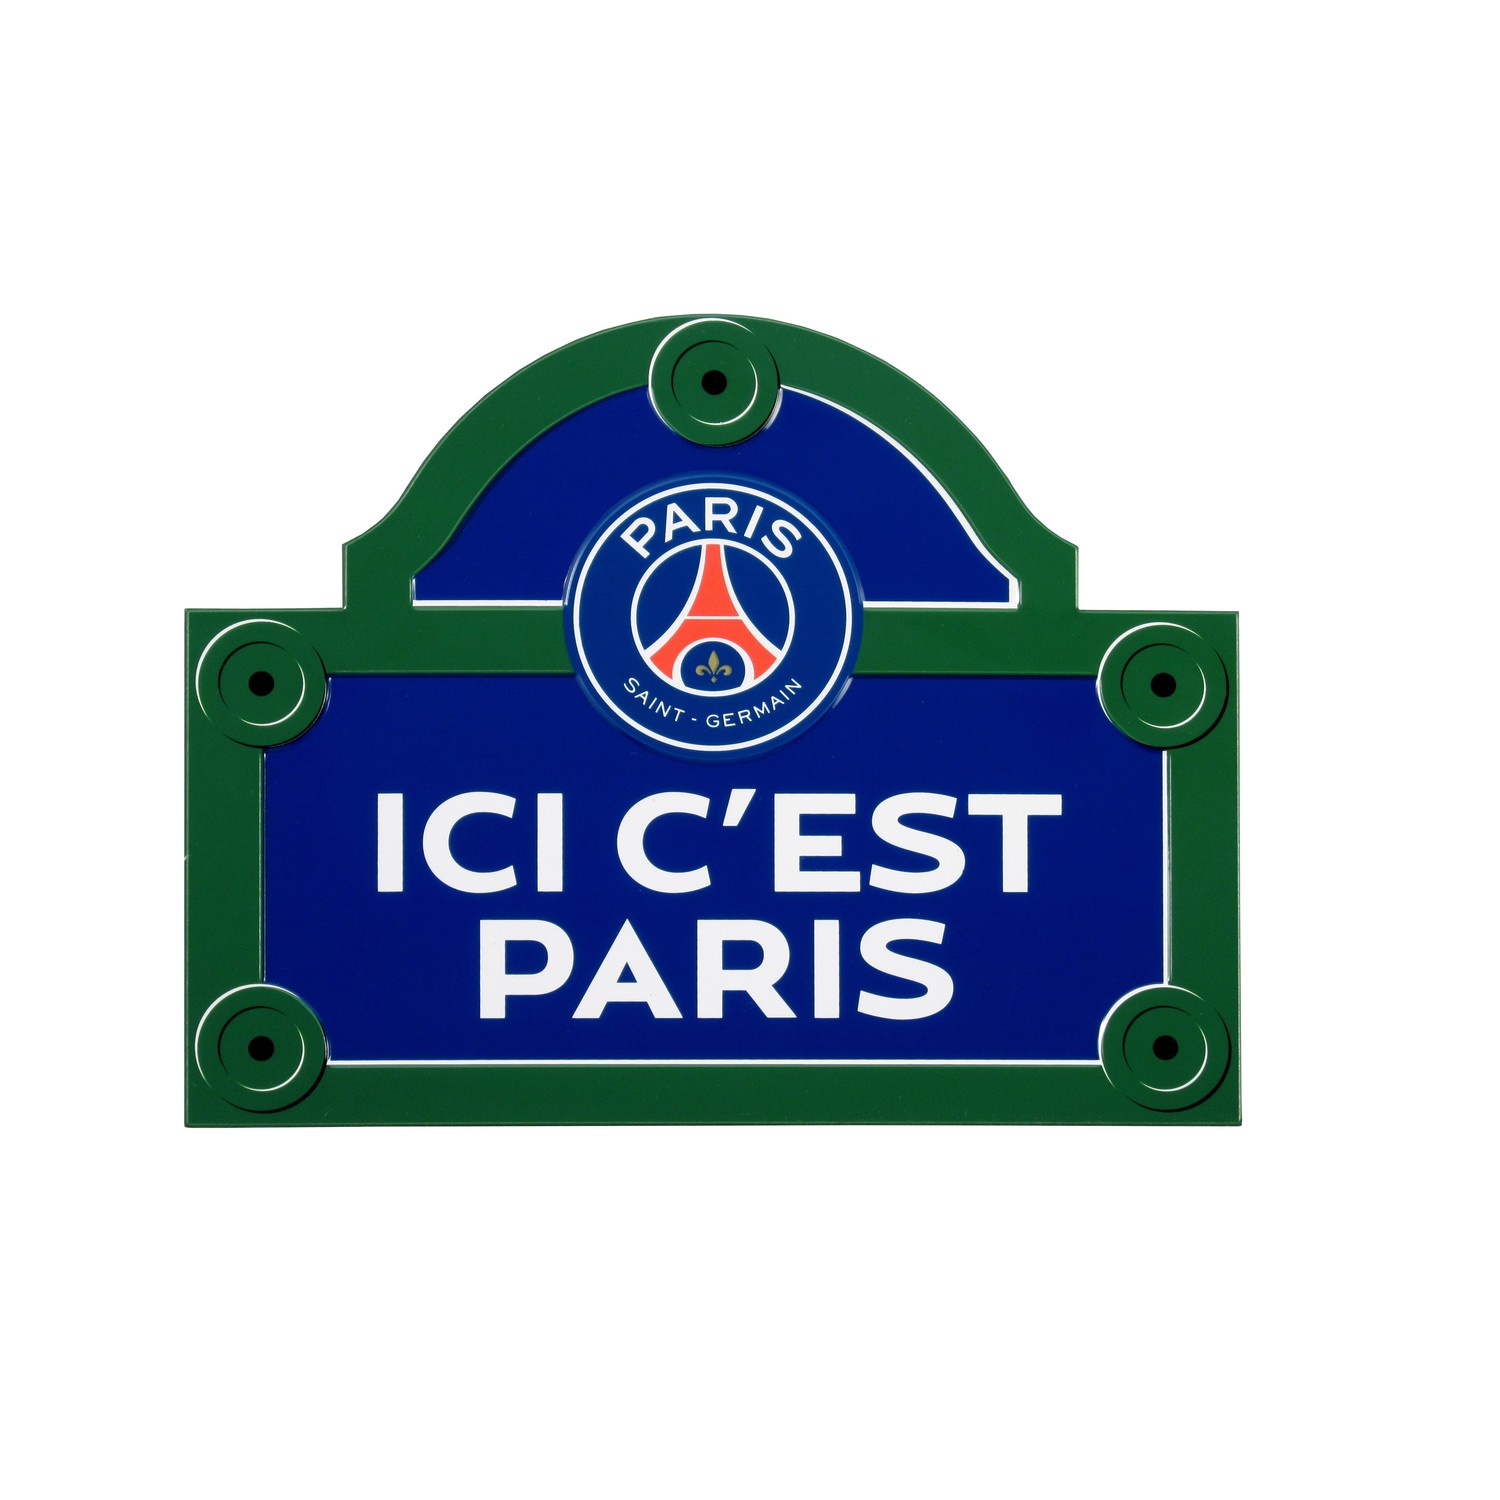 PSG Fanion de Voiture Ici Cest Paris Officiel 11cm Bleu